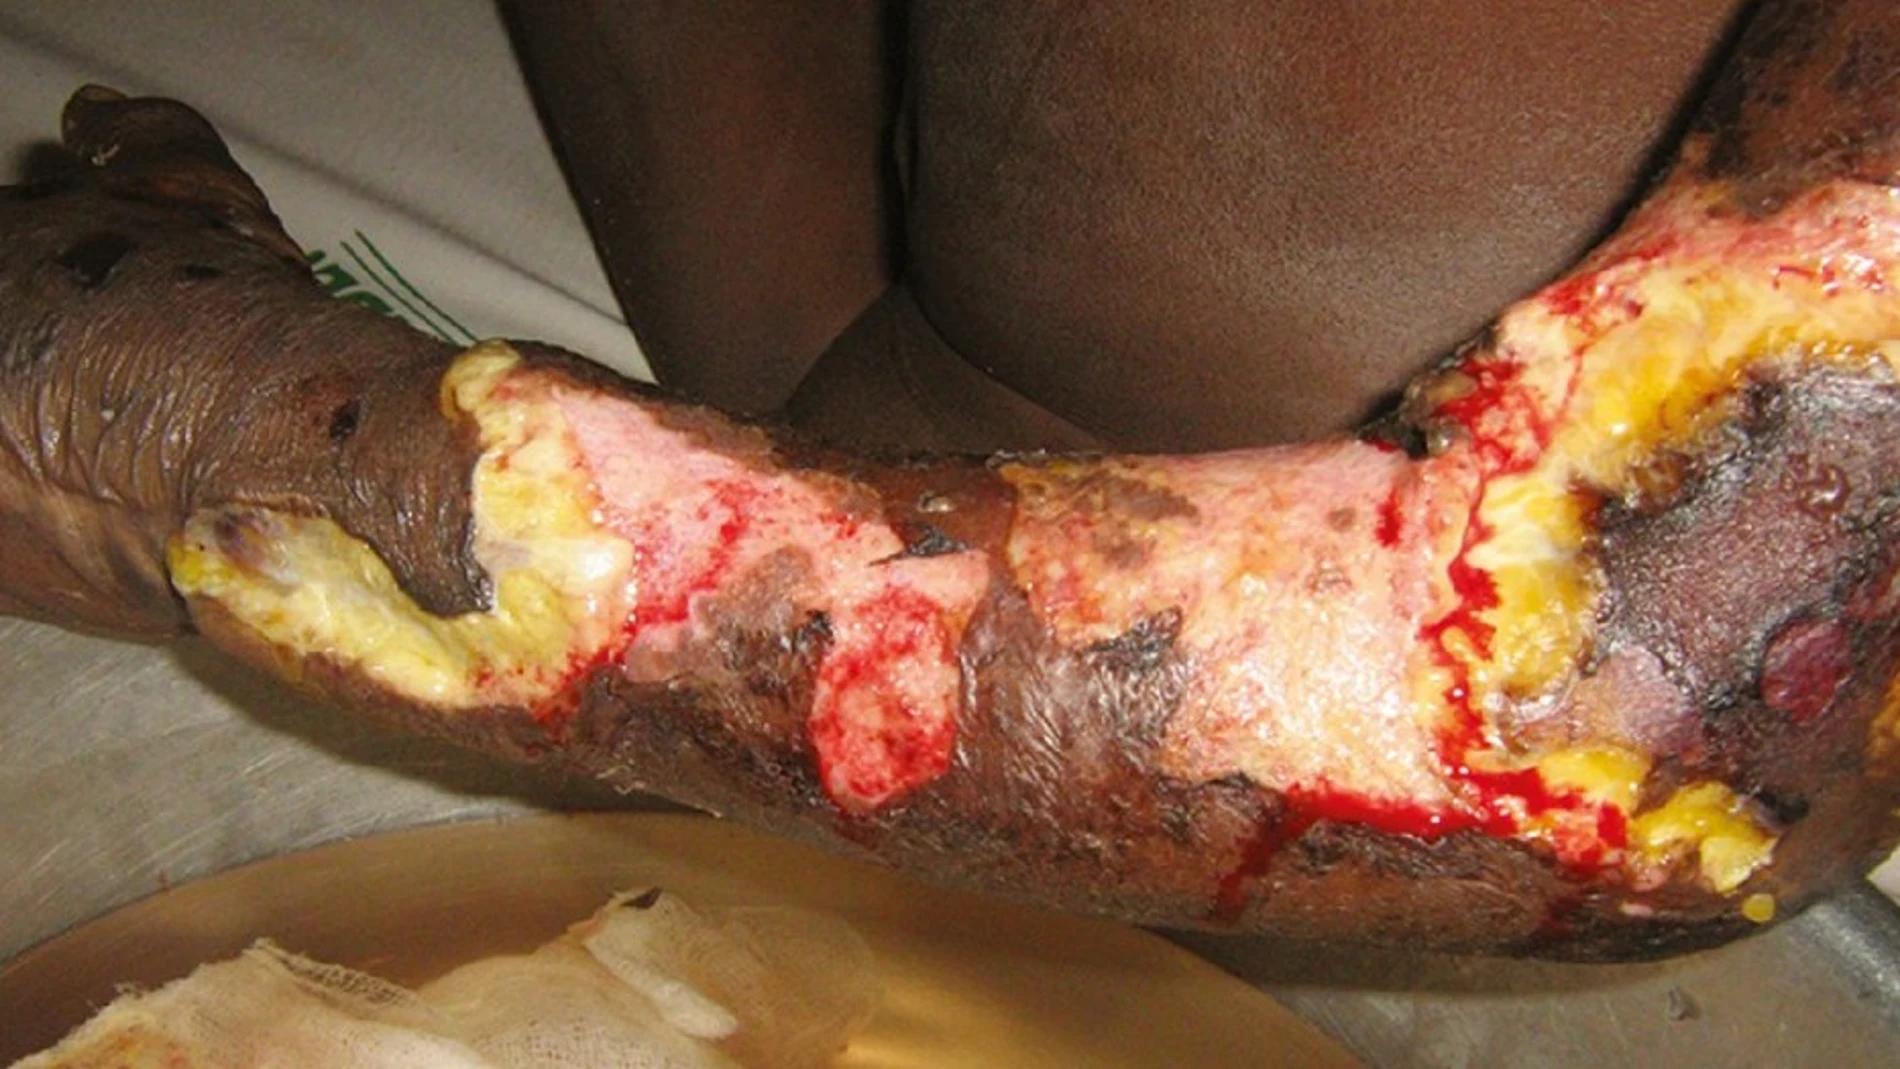 La necrosis muscular es uno de los efectos de la mordedura de las serpientes hemotóxicas